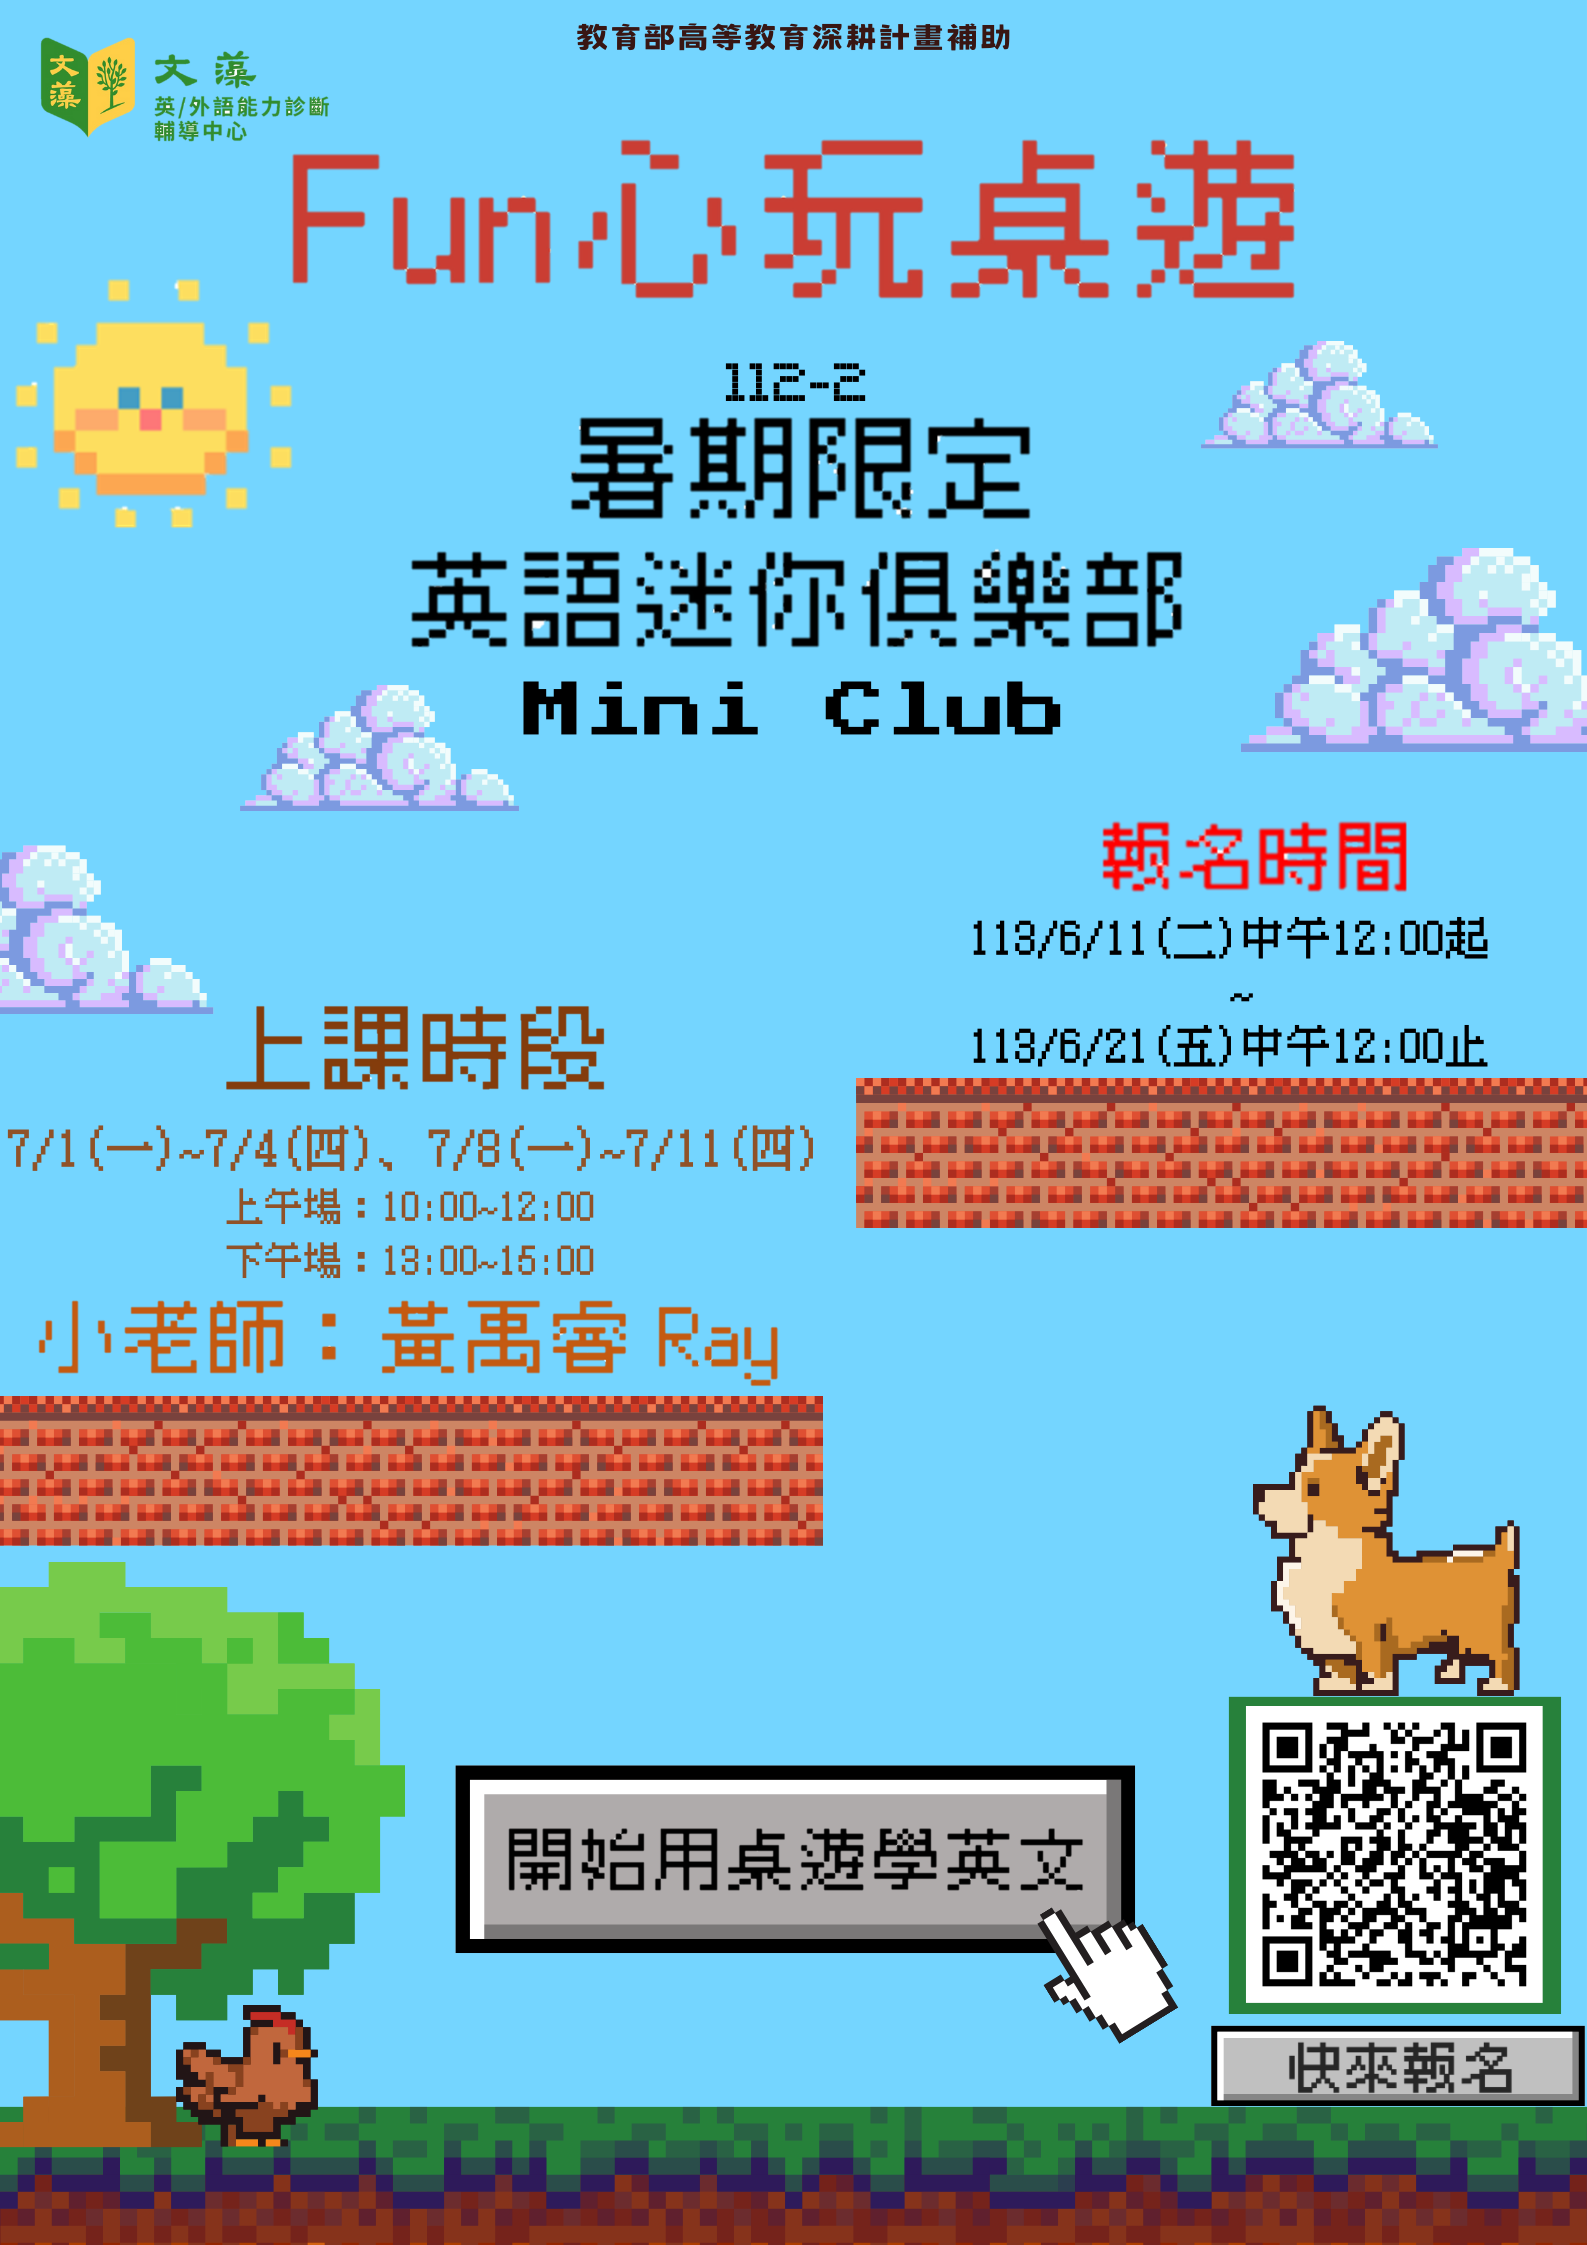 112-2暑期限定 Mini Club (2).png